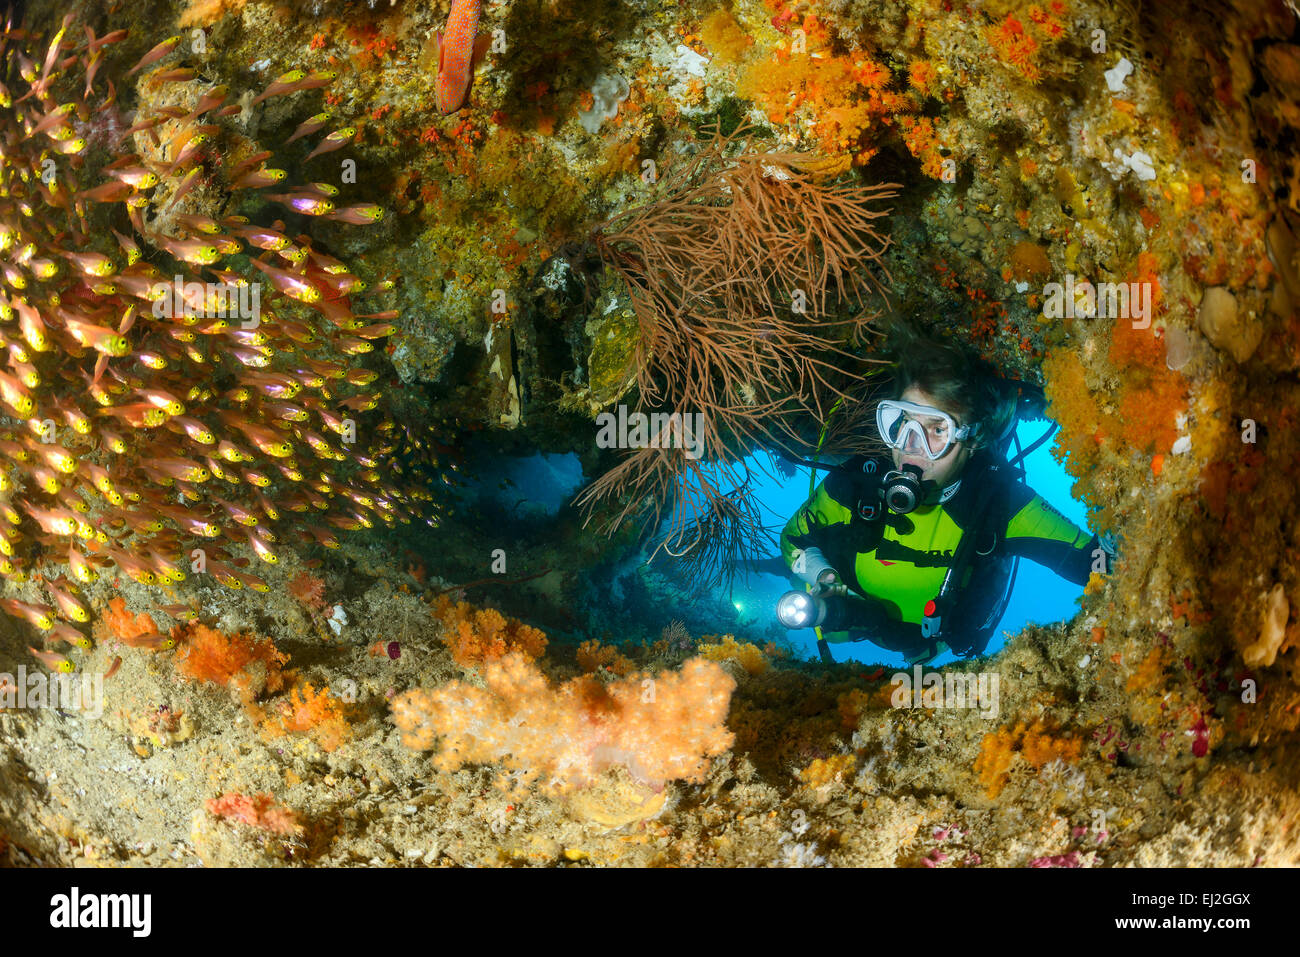 Ransonneti Parapriacanthus, balayeuse de Pygmées et de plongée sous marine, l'atoll de Baa, Maldives, océan Indien Banque D'Images